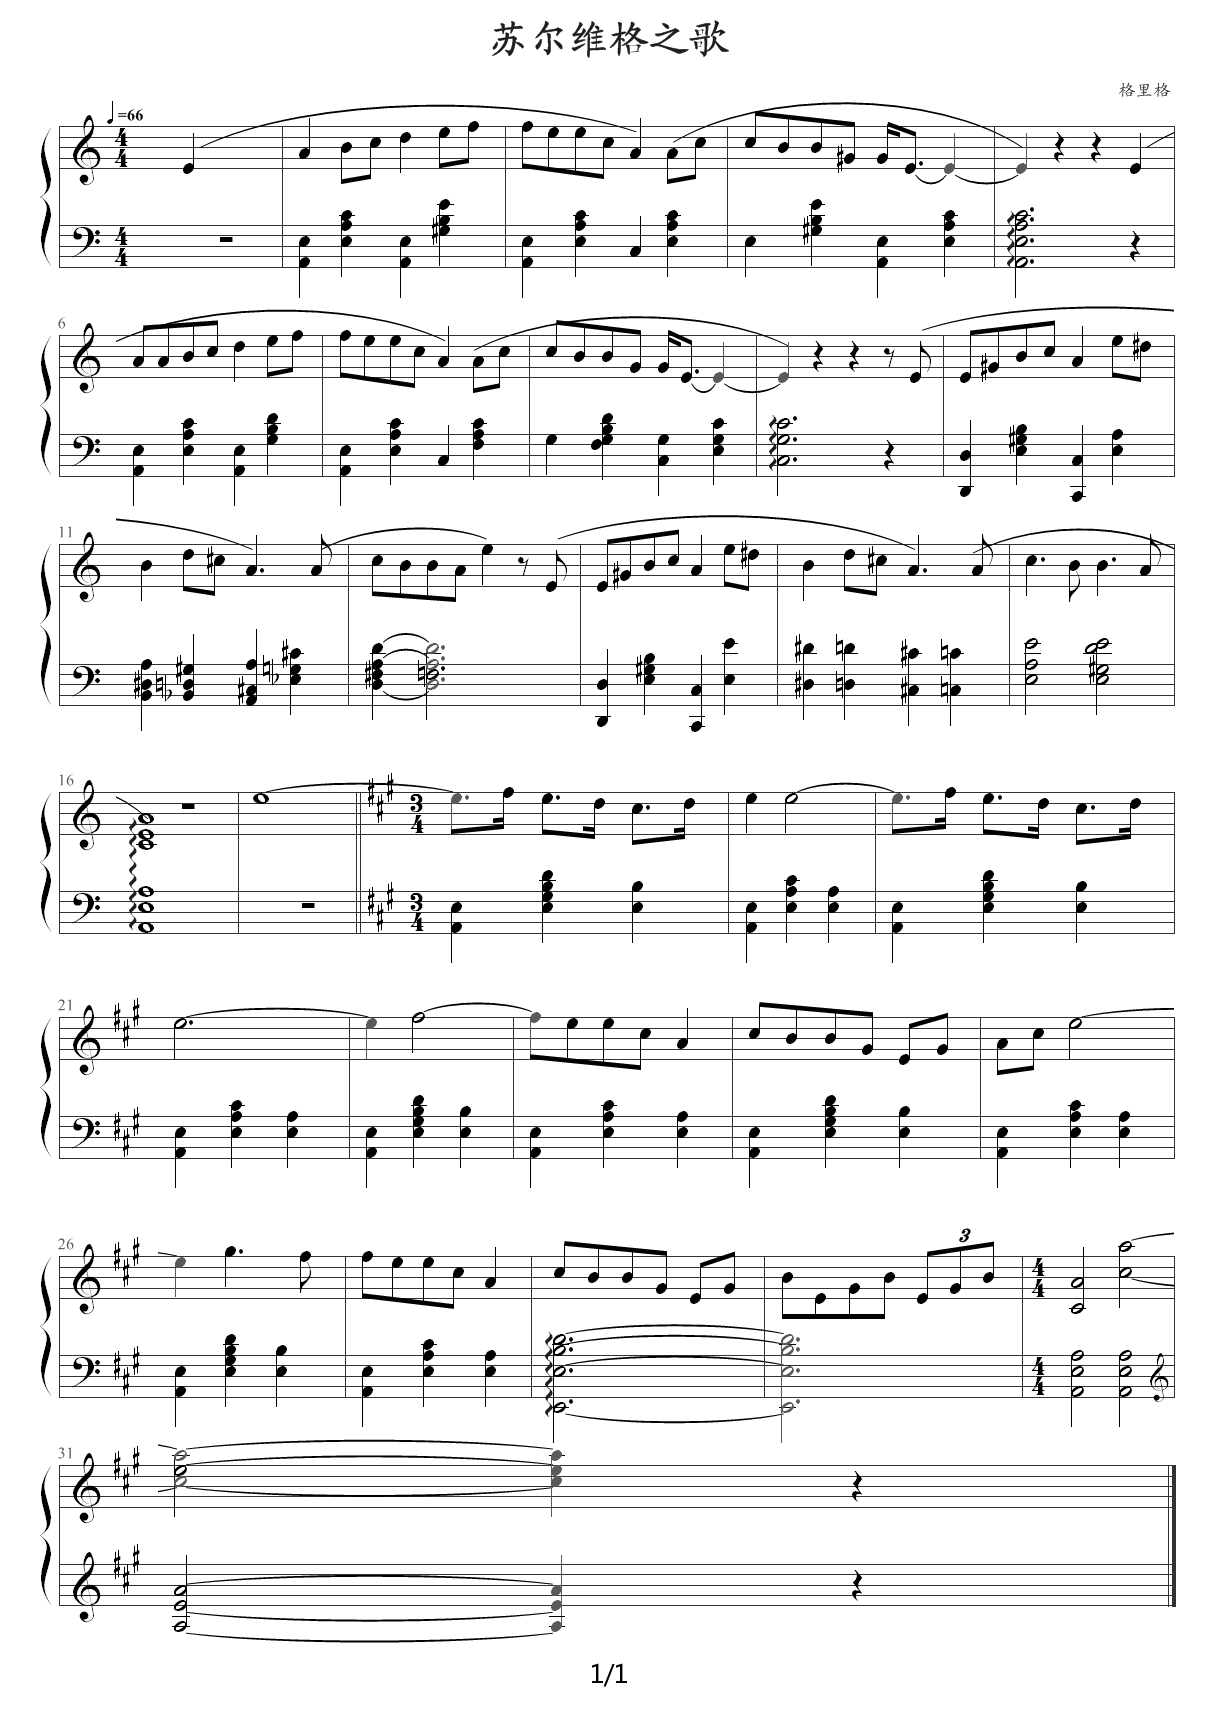 外国儿童歌曲钢琴曲集111首(054 苏尔维格之歌) C调